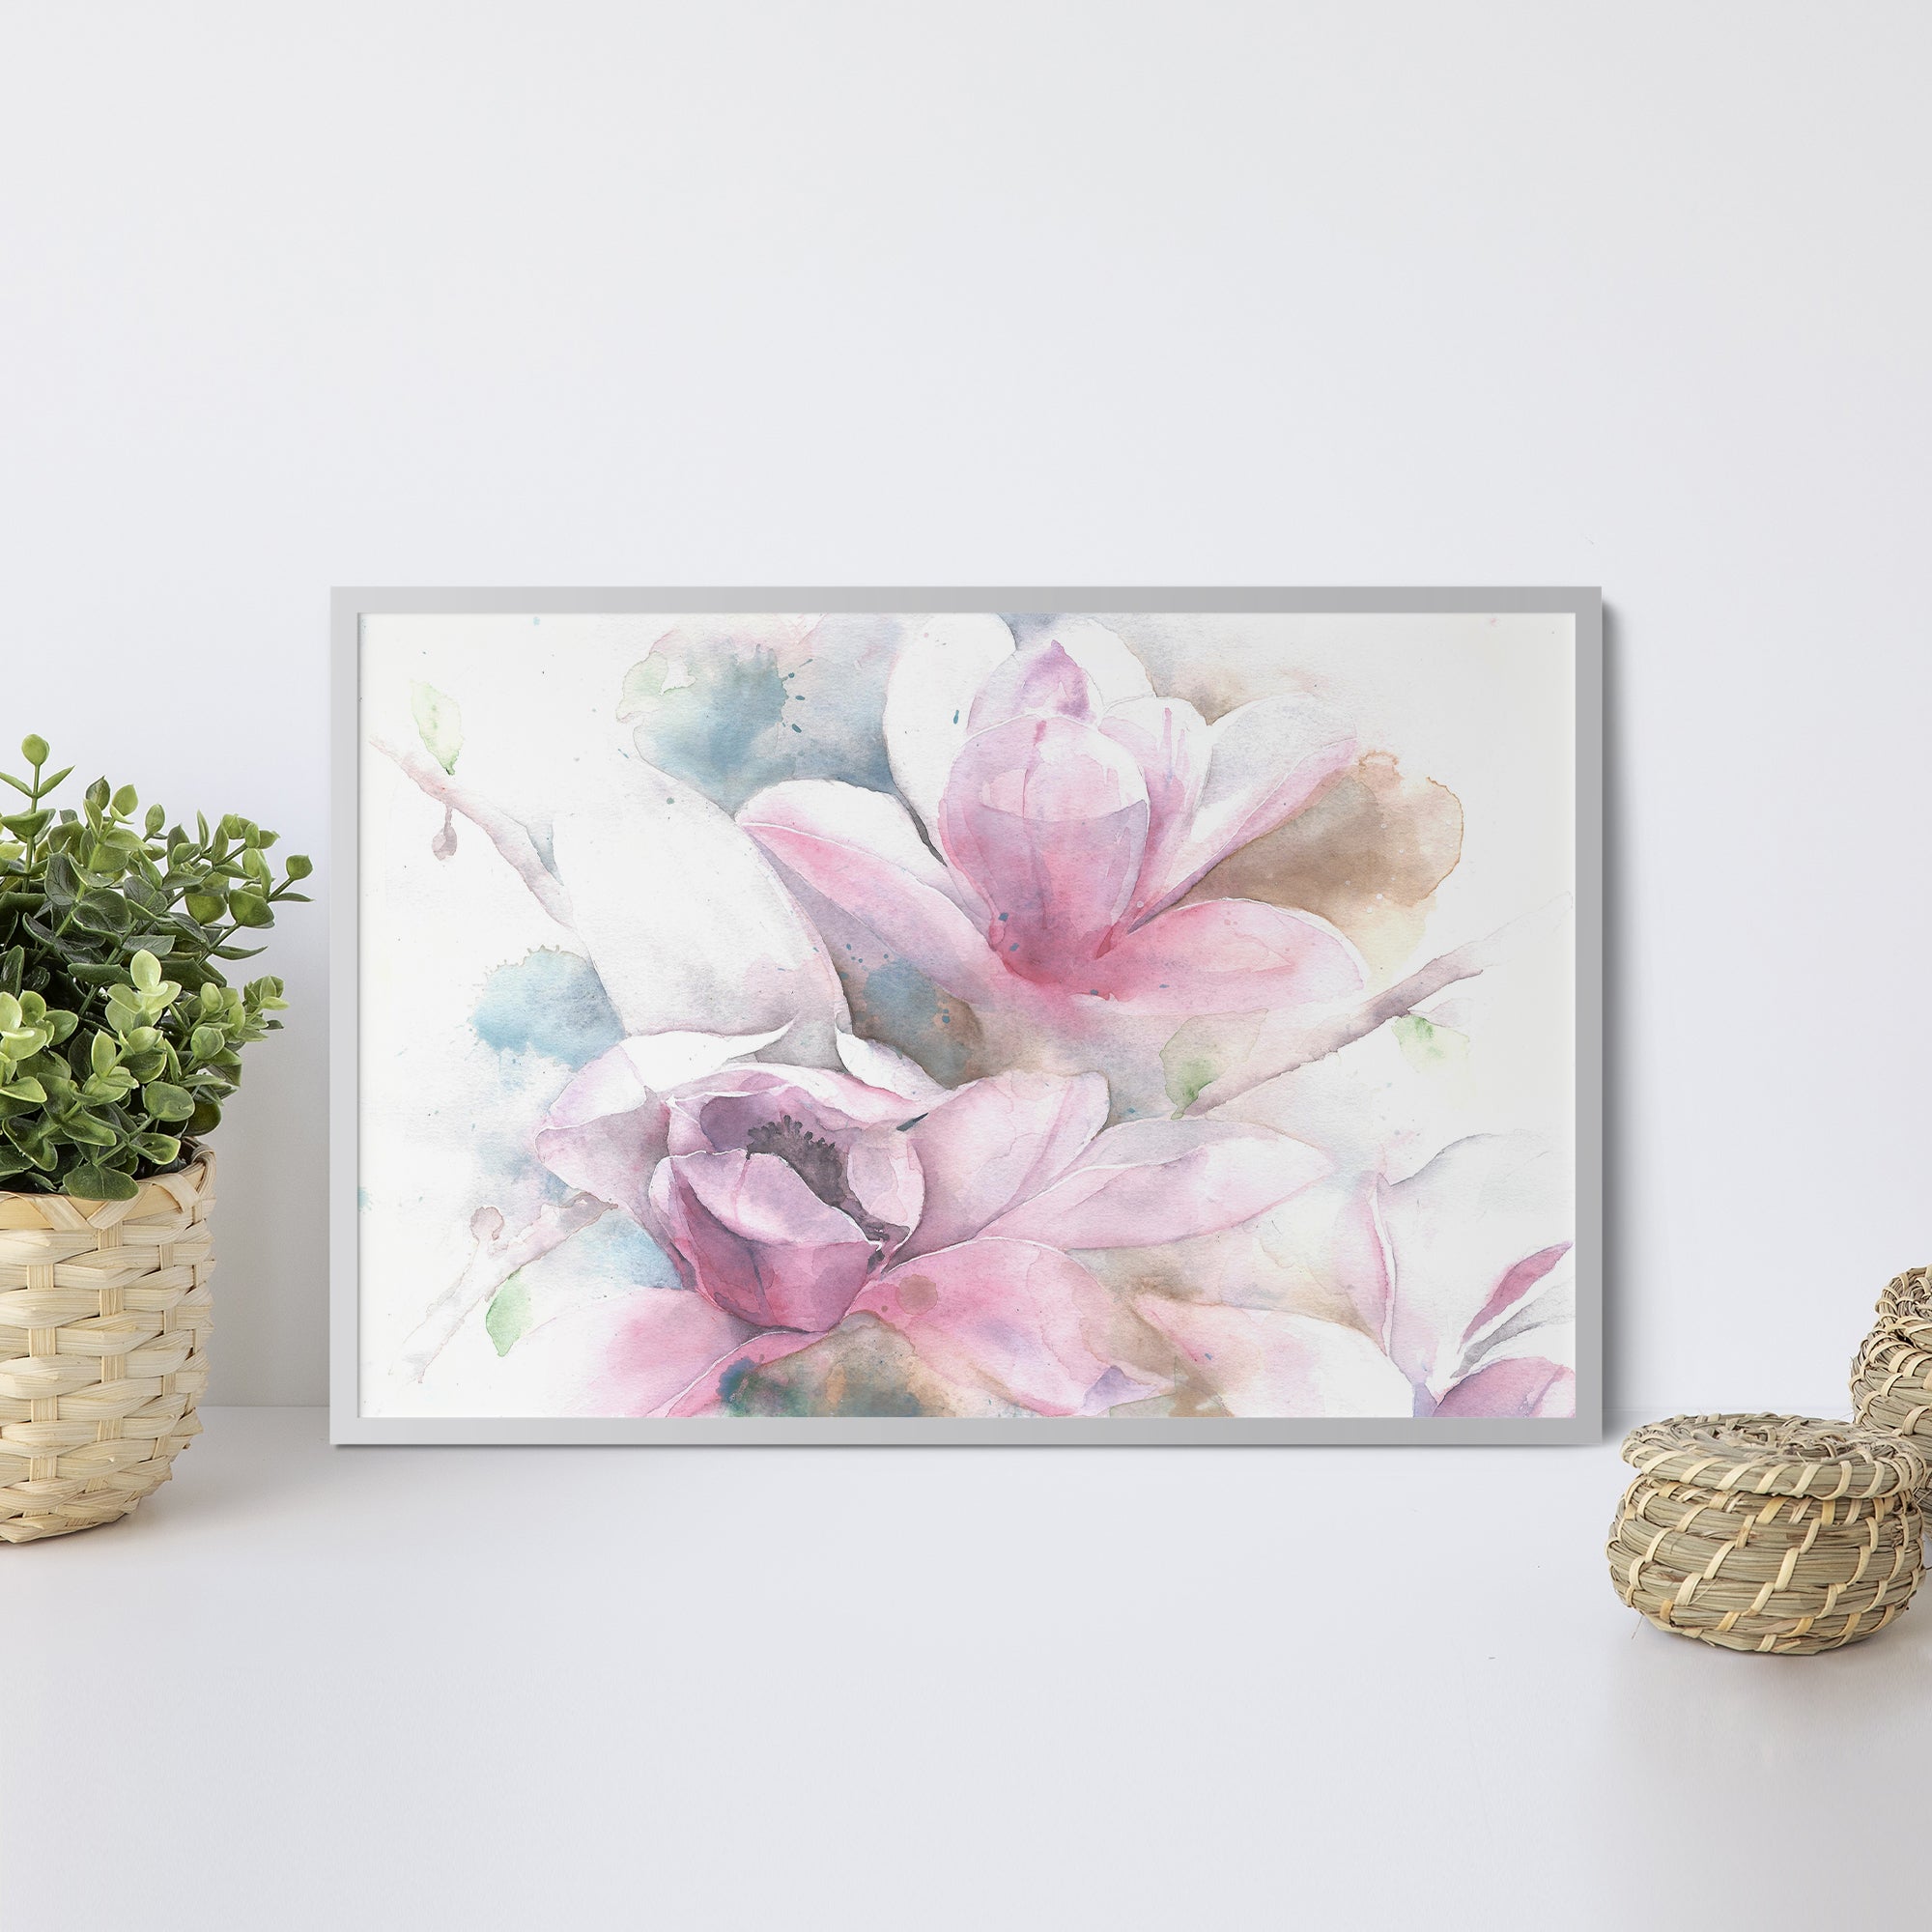 Foto obraz w ramie - Akwarela, różowe kwiaty (kolorowy) - Gallart.pl